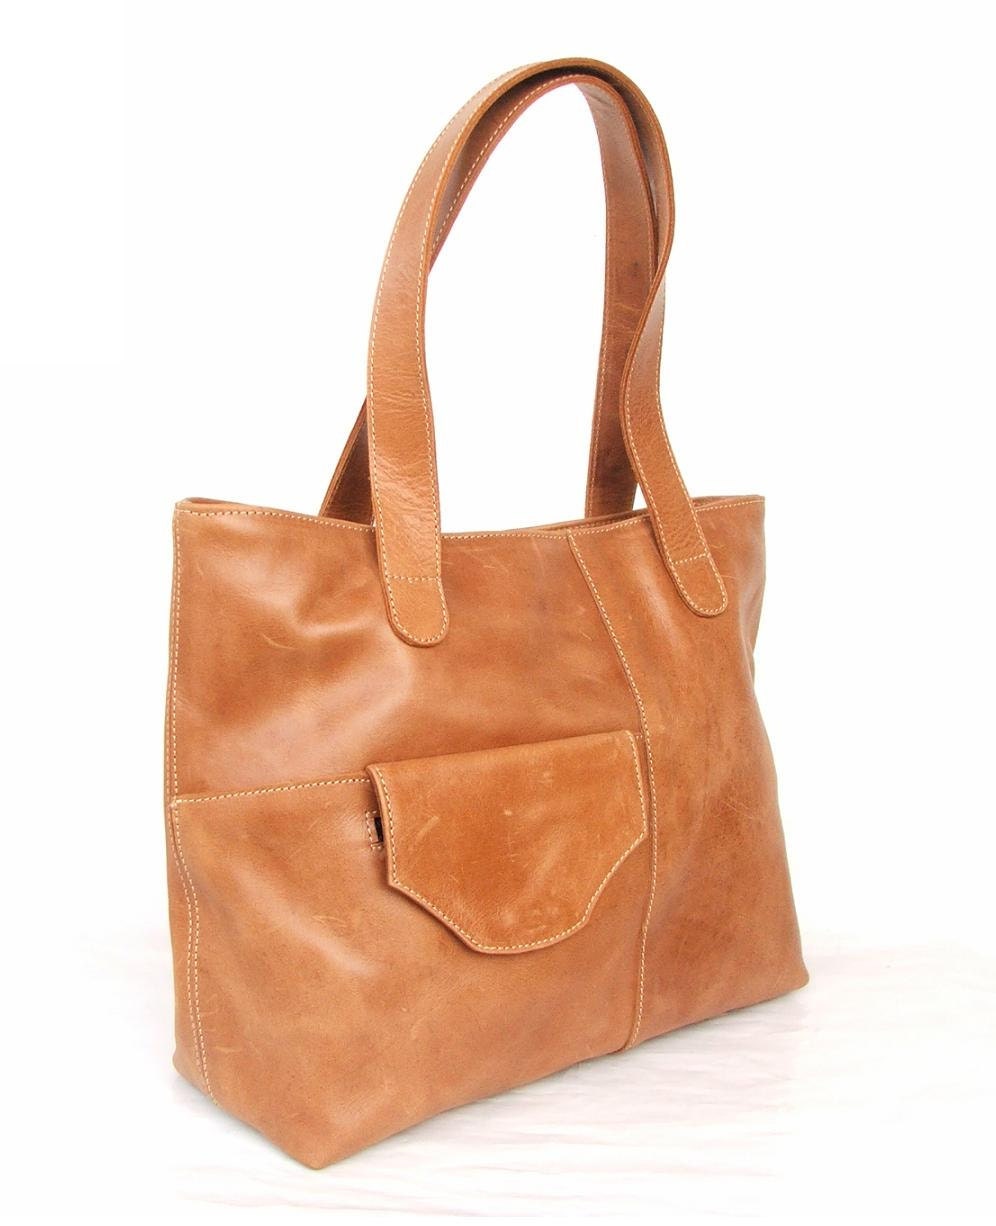 Leather bag work bag women leather bag Satchel leather bag | Etsy